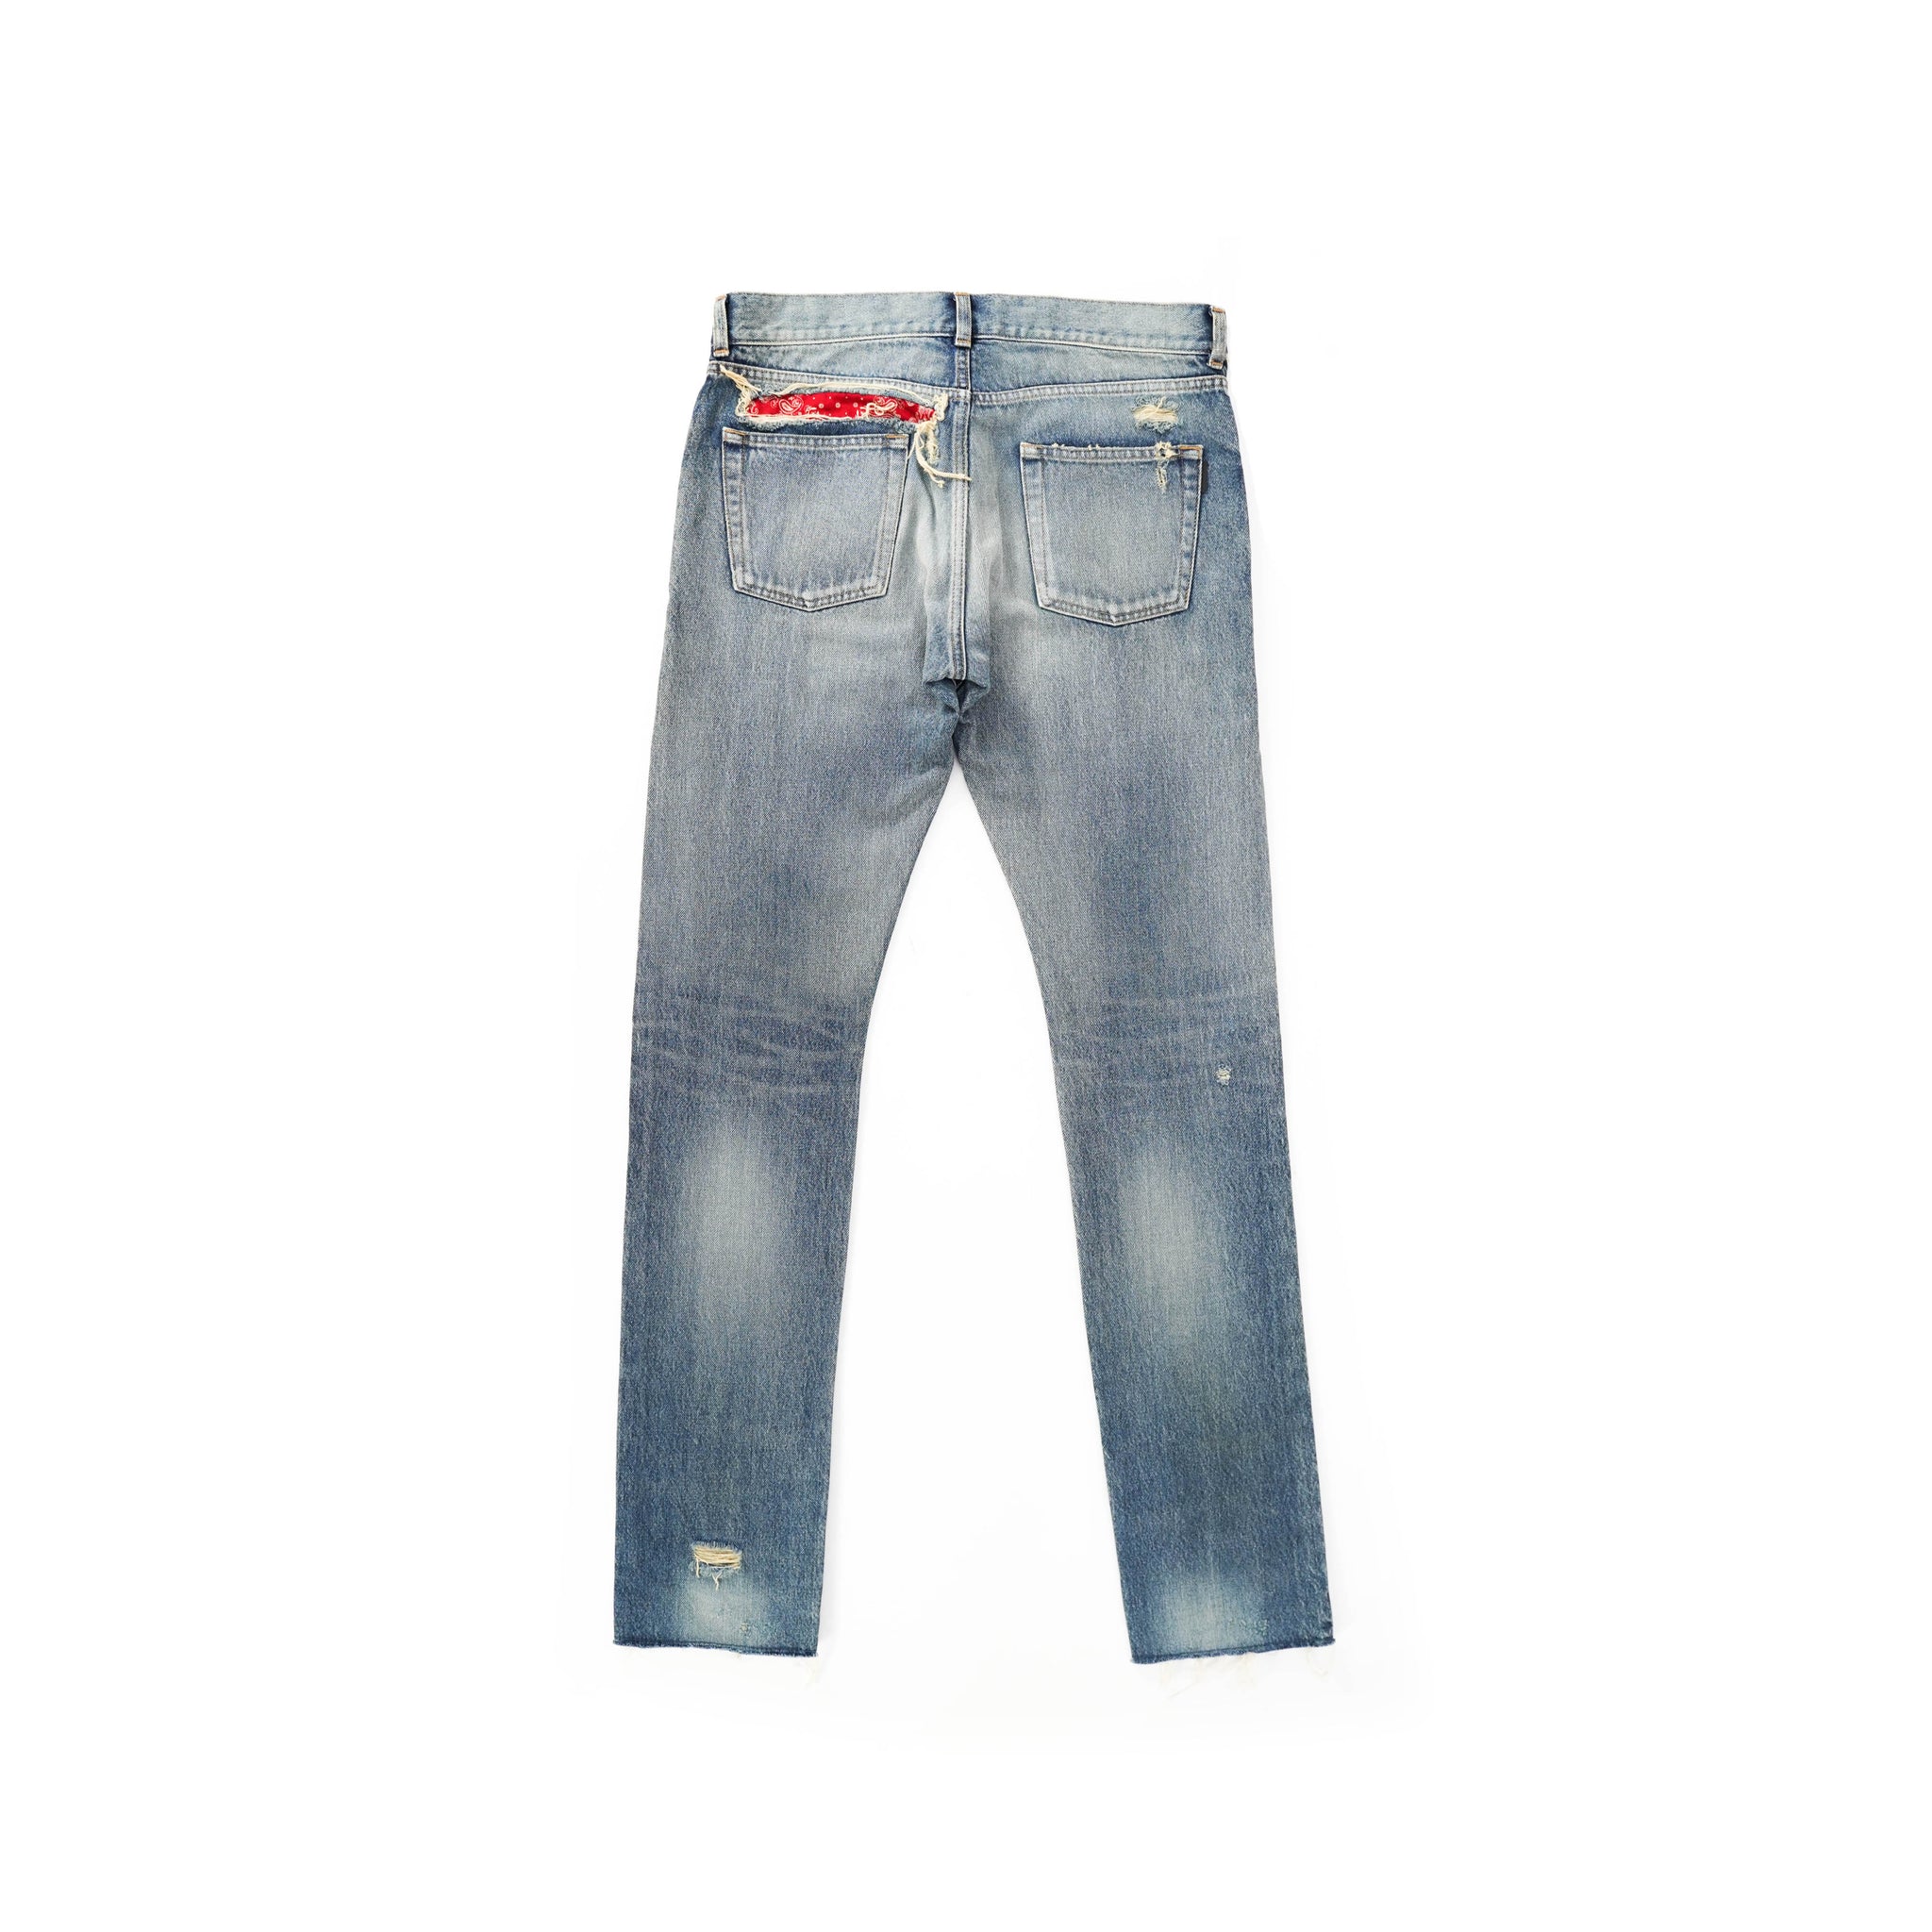 Backyardarchive – Distressed Bandana Jeans